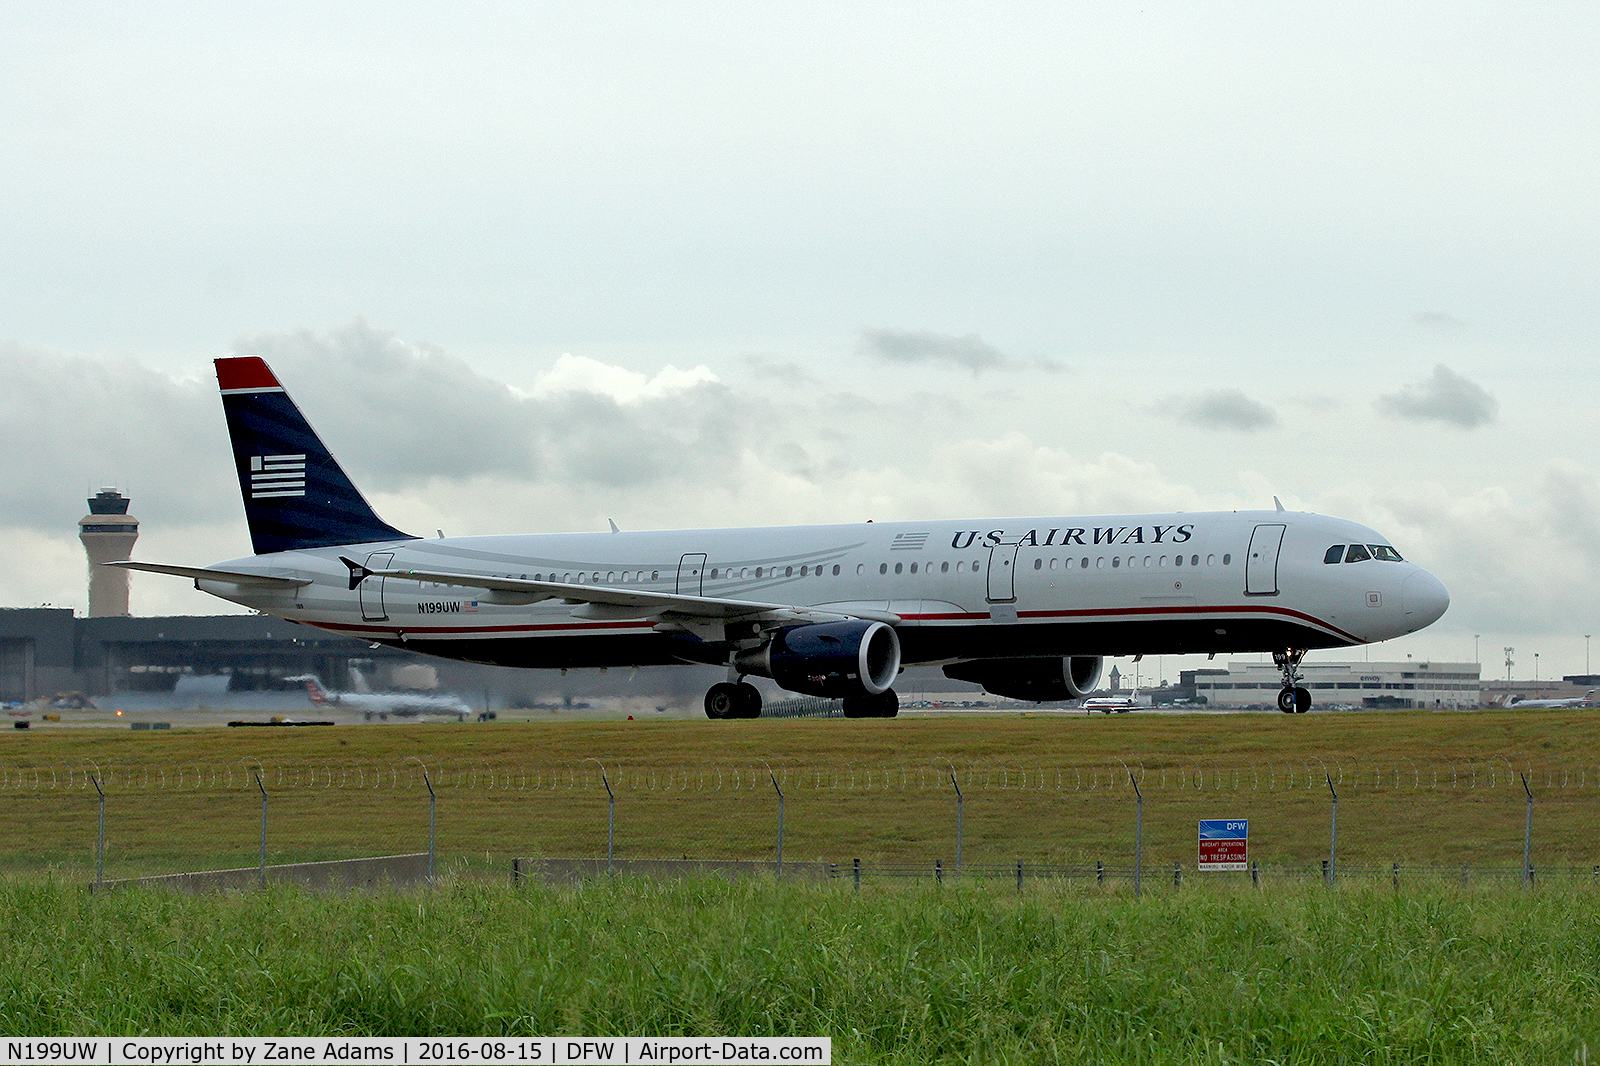 N199UW, 2013 Airbus A321-211 C/N 5457, Departing DFW Airport